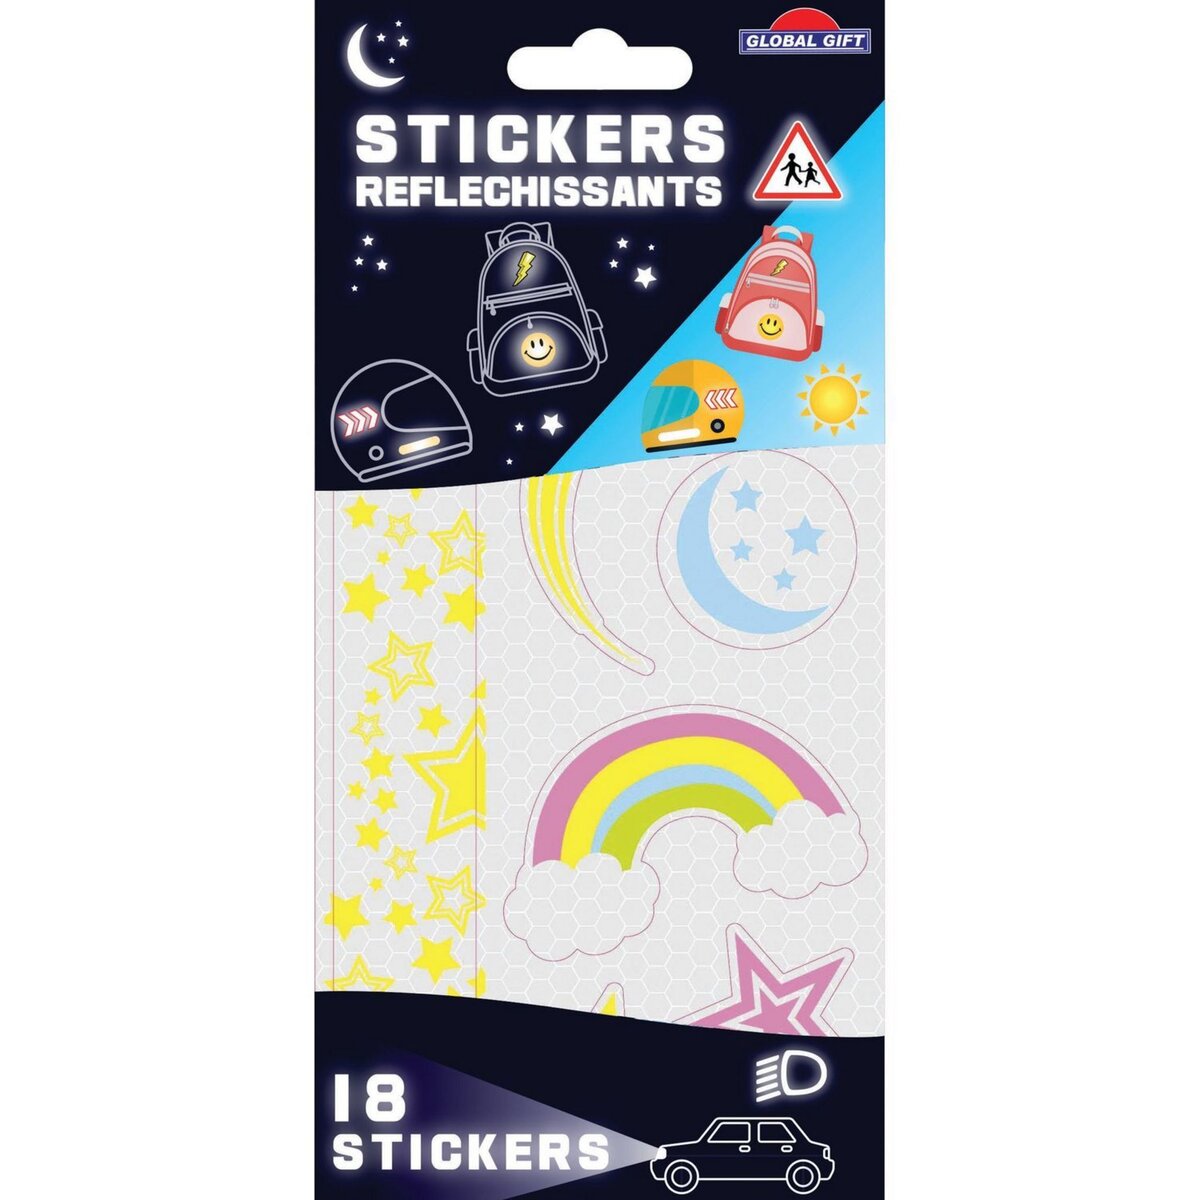 18 stickers rétro-réfléchissants - Étoiles - Résistants et